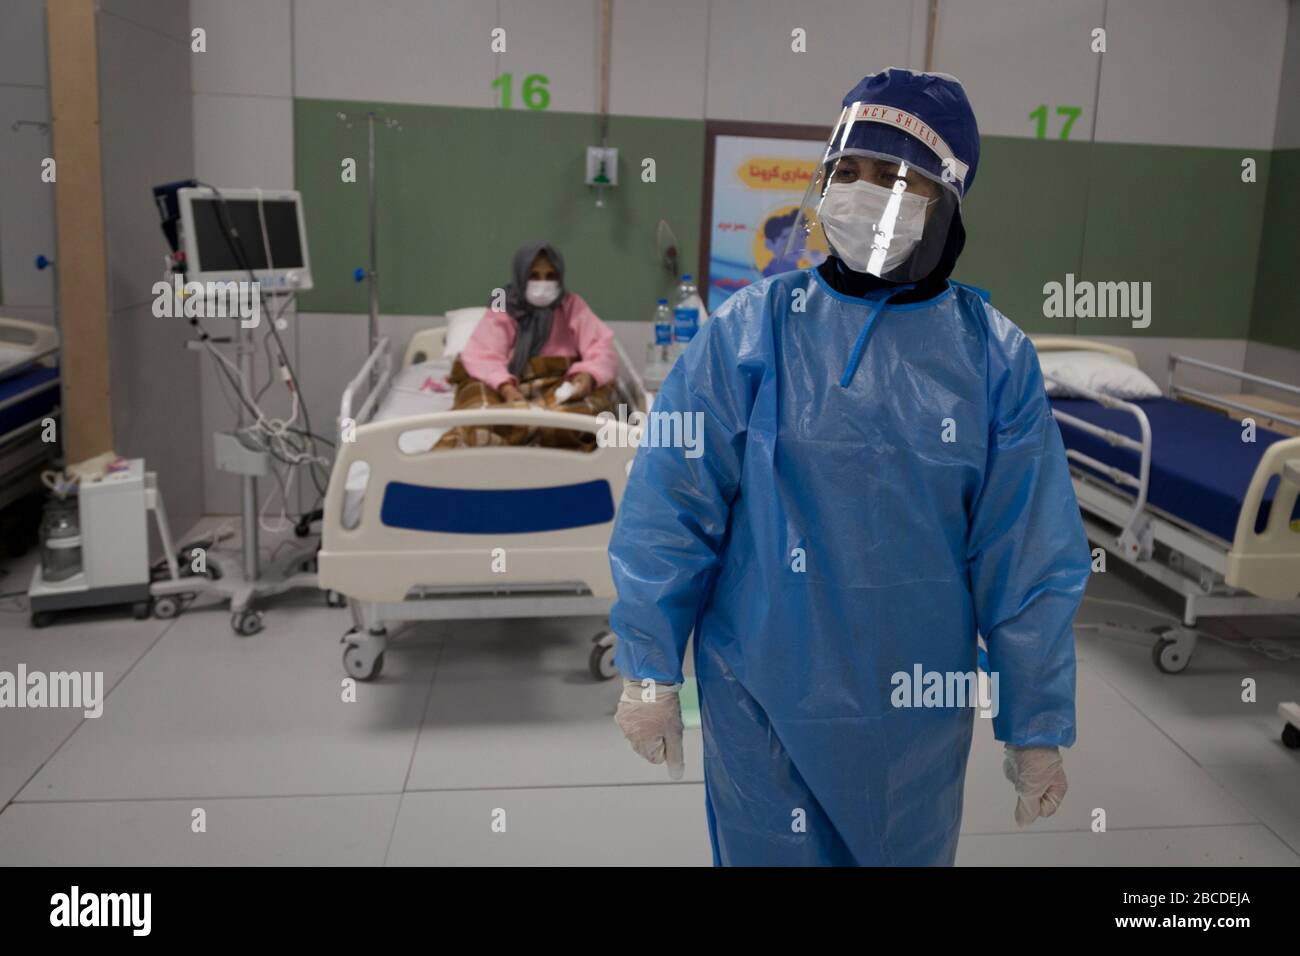 Teheran, Iran. April 2020. Blick auf das Messegelände der Iranmall, Teherans größtes Einkaufszentrum, nachdem es in ein Krankenhaus für die neuartigen Coronavirus (COVID-19)-Patienten im Westen Teherans, Iran, umgewandelt wurde. Aufgrund der neuen Art von Coronavirus Pandemie werden die Fairgrounds und Turnhallen vorübergehend in Krankenhäuser des Landes umgewandelt. In den letzten Tagen hat der Iran, der gegen den schlimmsten neuen Ausbruch des Coronavirus in der Region kämpft, die Schließung von unwesentlichen Unternehmen und verbotene Reisen zwischen Städten angeordnet, um die Verbreitung des Virus zu verhindern. Credit: Rouzbeh Fouladi/ZUMA Wire/Alamy Live News Stockfoto